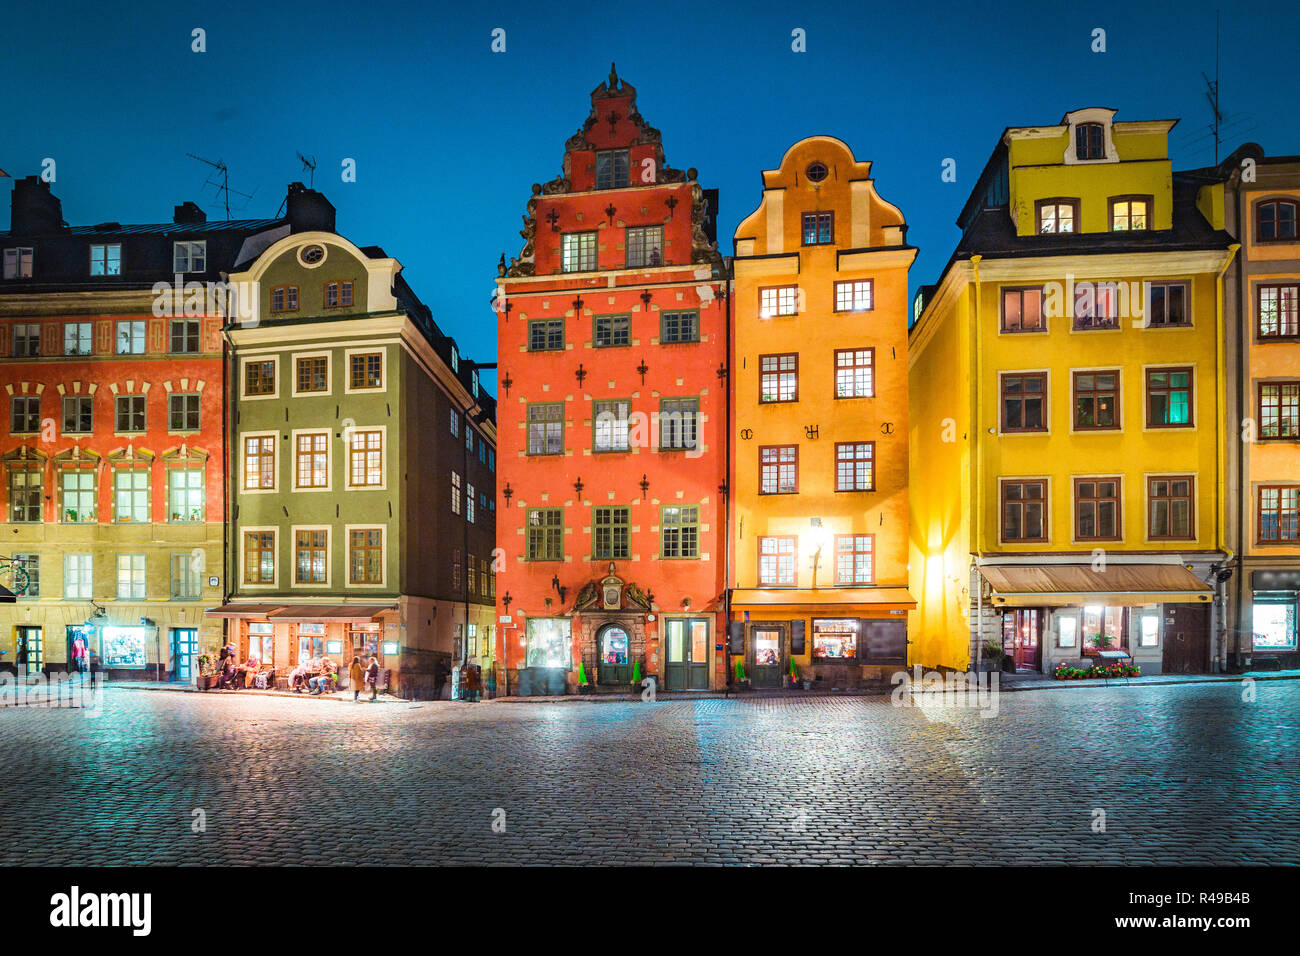 L'affichage classique de maisons colorées à la place Stortorget célèbre dans le quartier historique de Stockholm, Gamla Stan (vieille ville) la nuit, le centre de Stockholm, Suède Banque D'Images